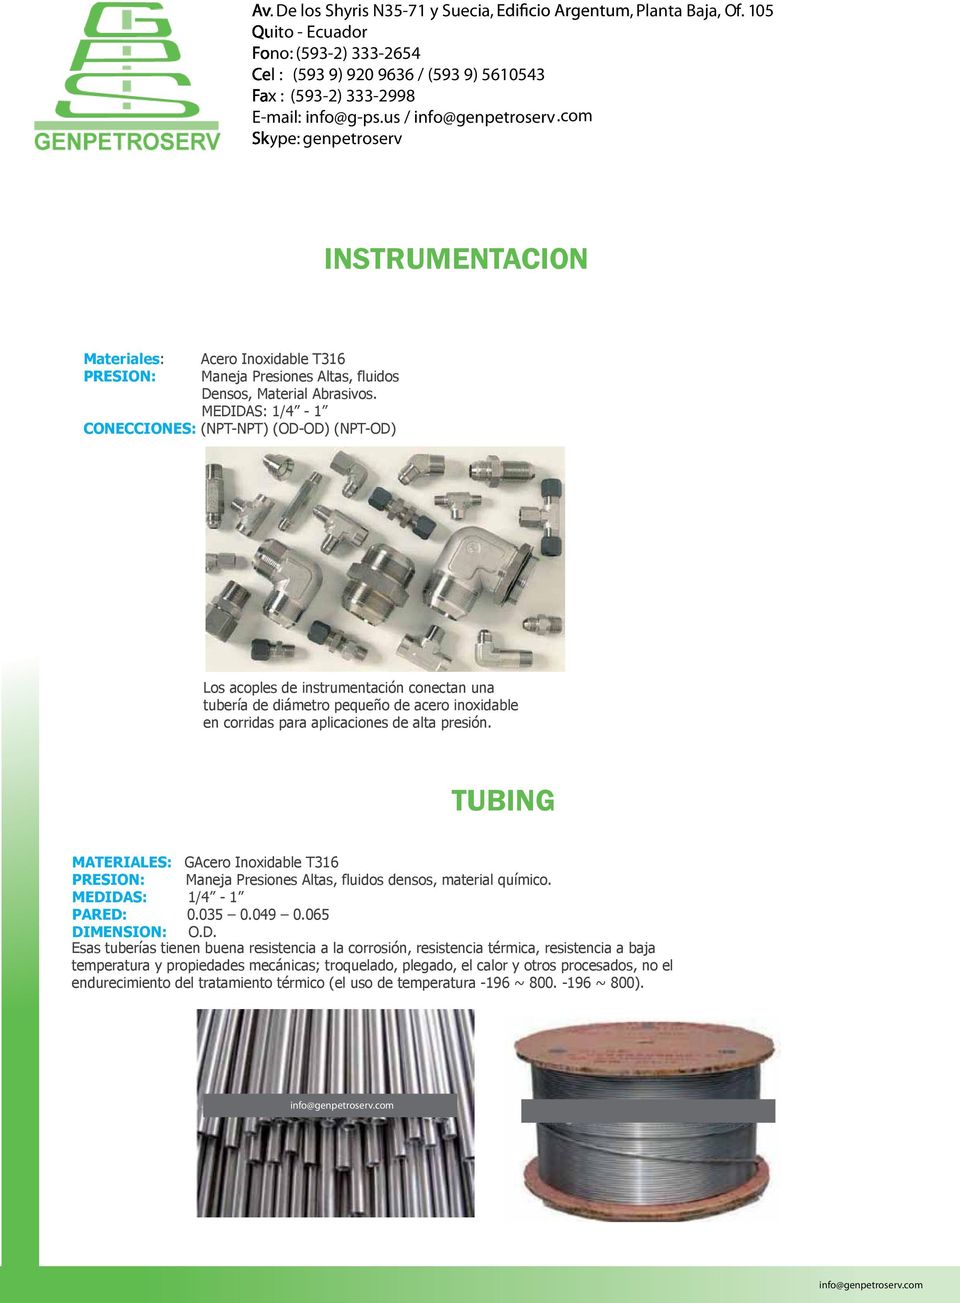 TUBING MATERIALES: GAcero Inoxidable T316 PRESION: Maneja Presiones Altas, fluidos densos, material químico. MEDI